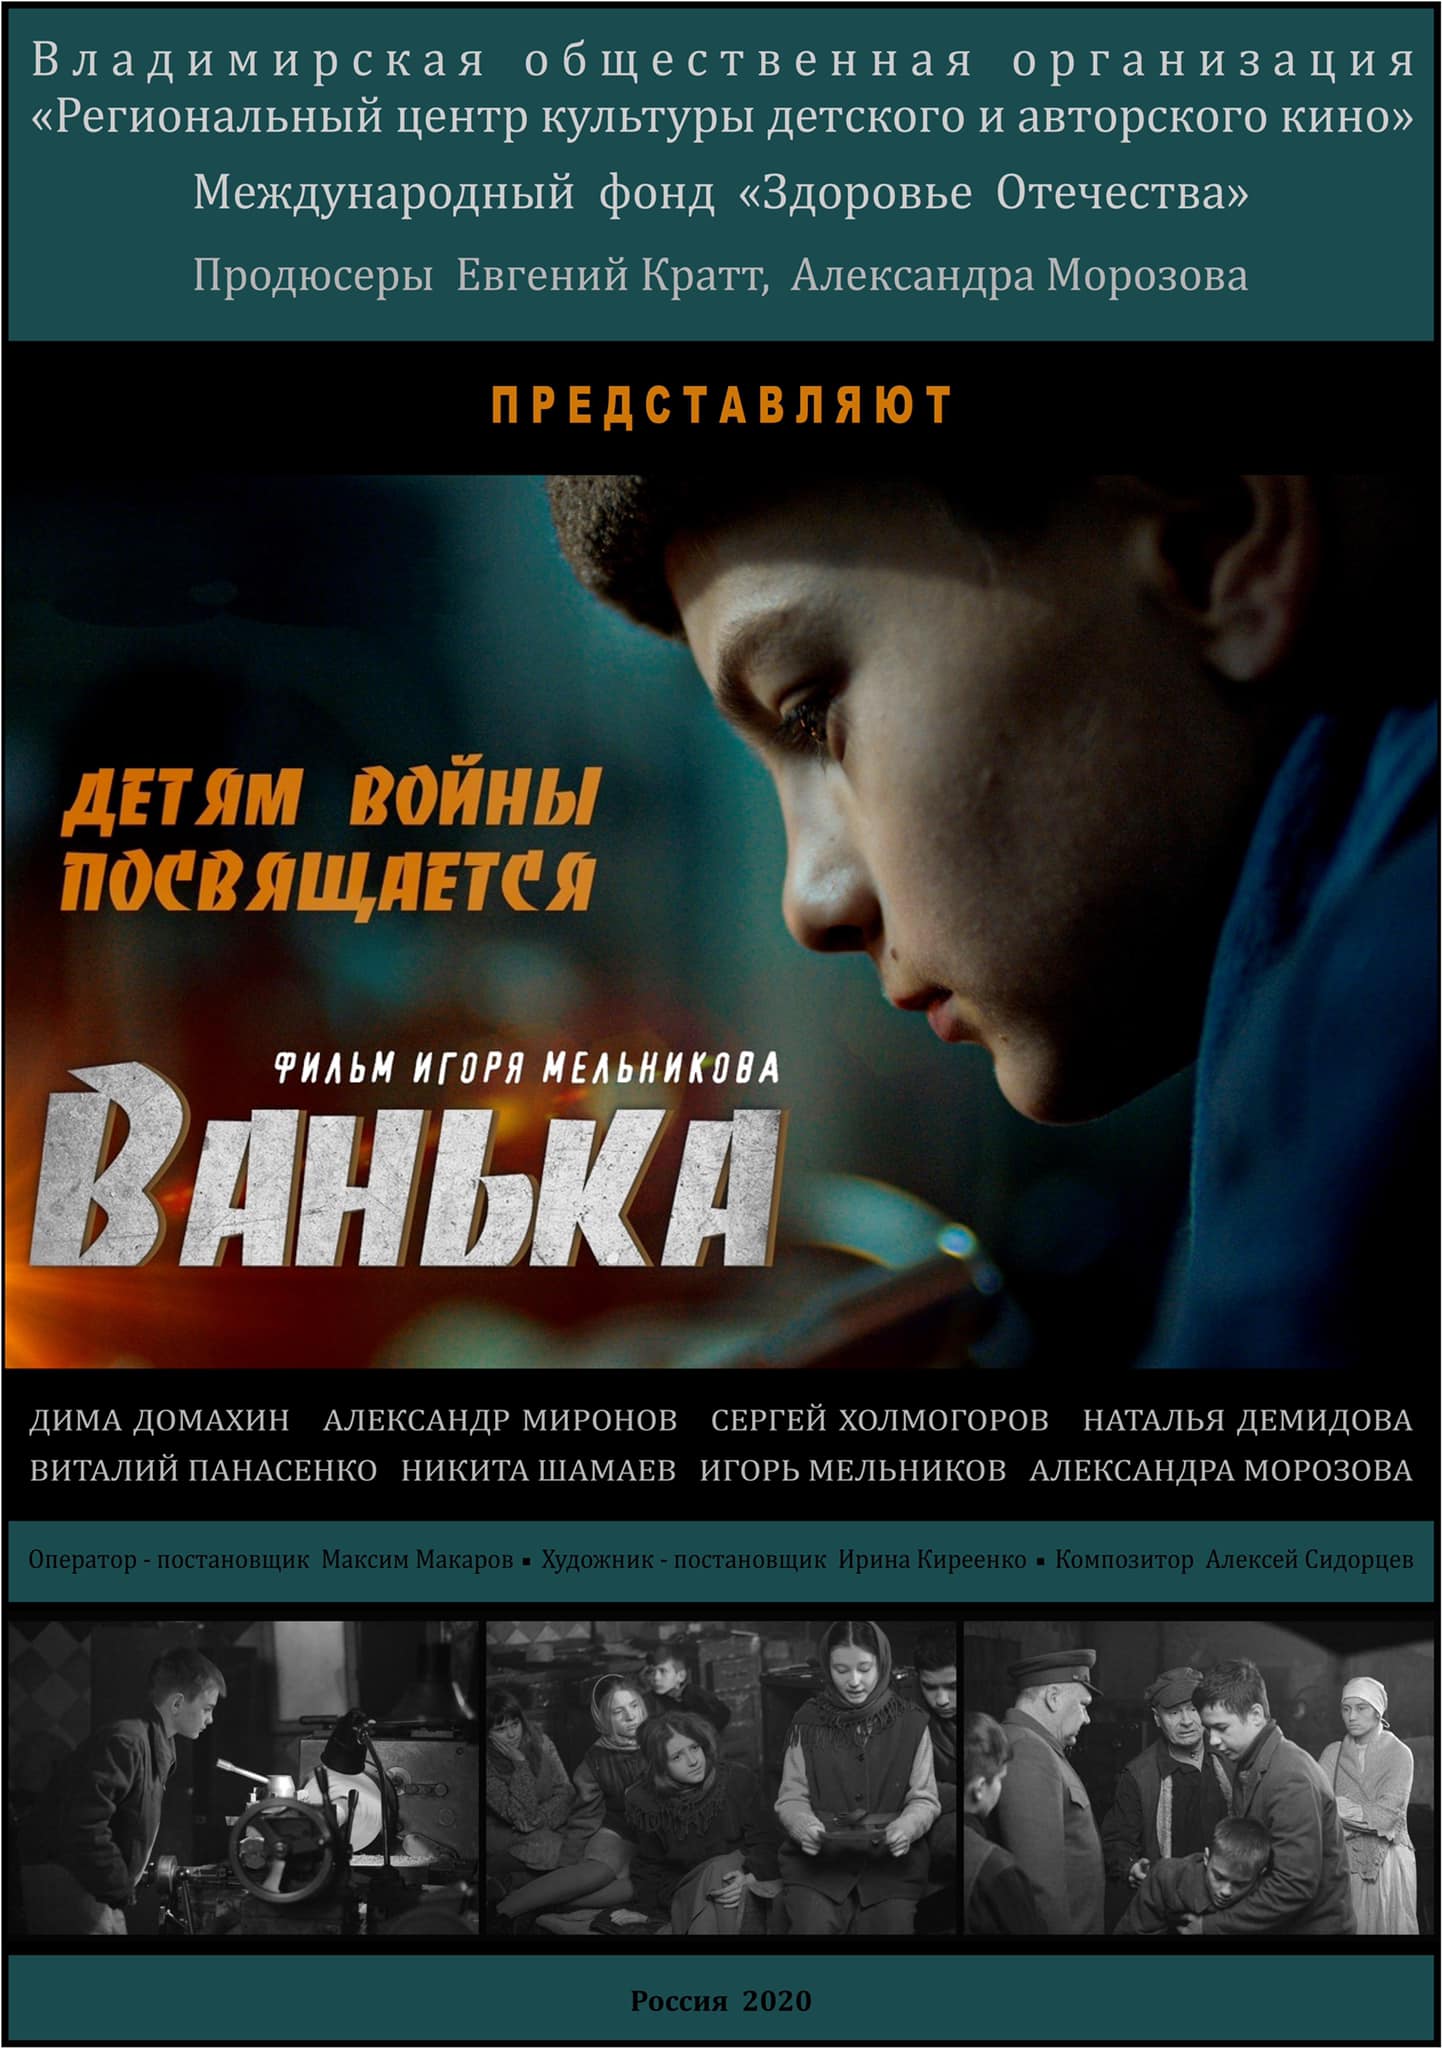 Короткометражный фильм Игоря Мельникова «Ванька» отметили на фестивале авторского русскоязычного кино в Нью-Йорке. Он завоевал специальный денежный приз и хрустальную звезду.